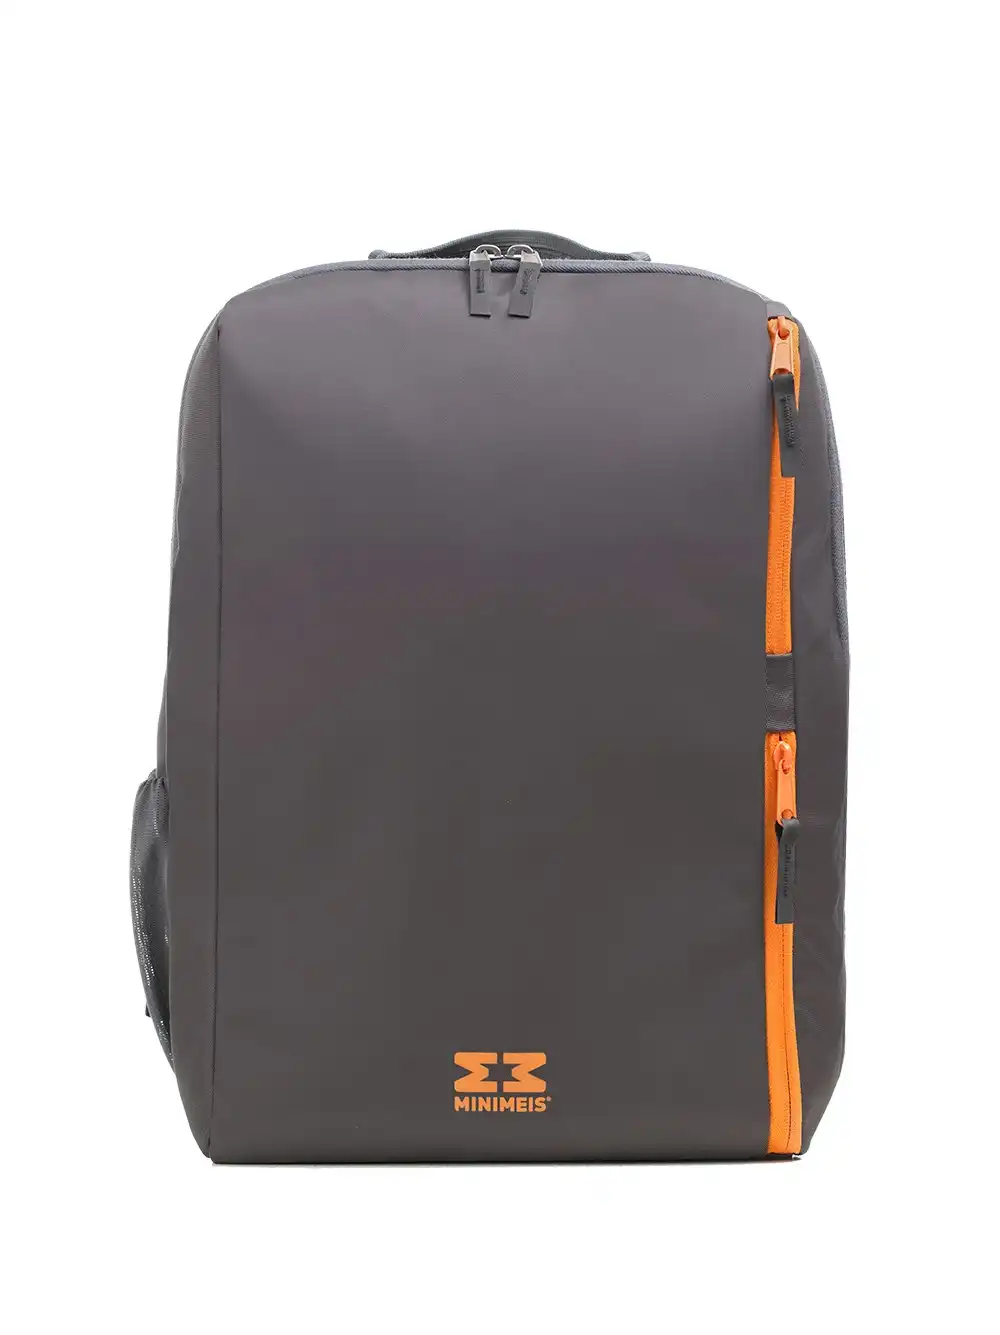 MiniMeis Shoulder Carrier 28L Storage Backpack Outdoor/Travel Bag Dark Grey